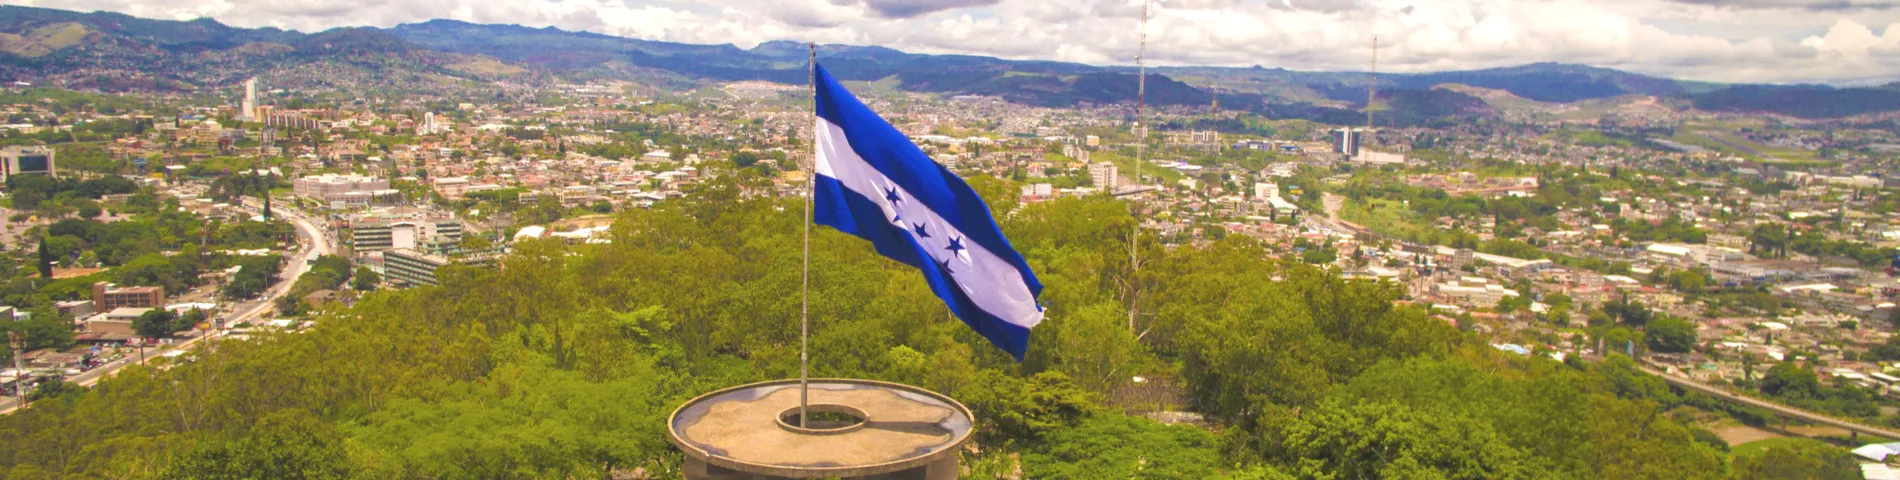 Honduras - 